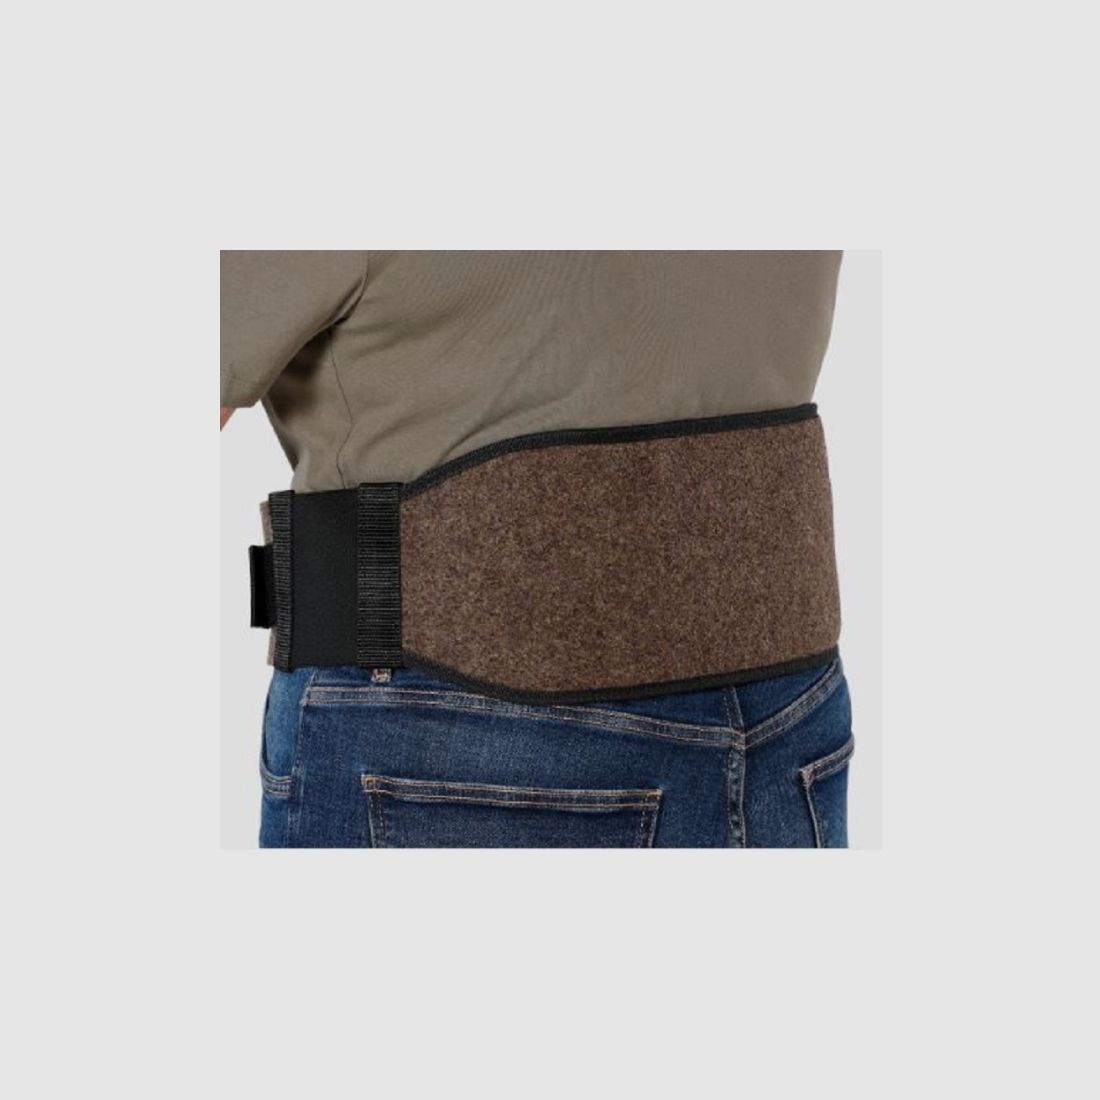 Wollfilz Nierenwärmer mit Tasche im Rücken (für Wärmepads) - ideal für (Winter)Ansitz